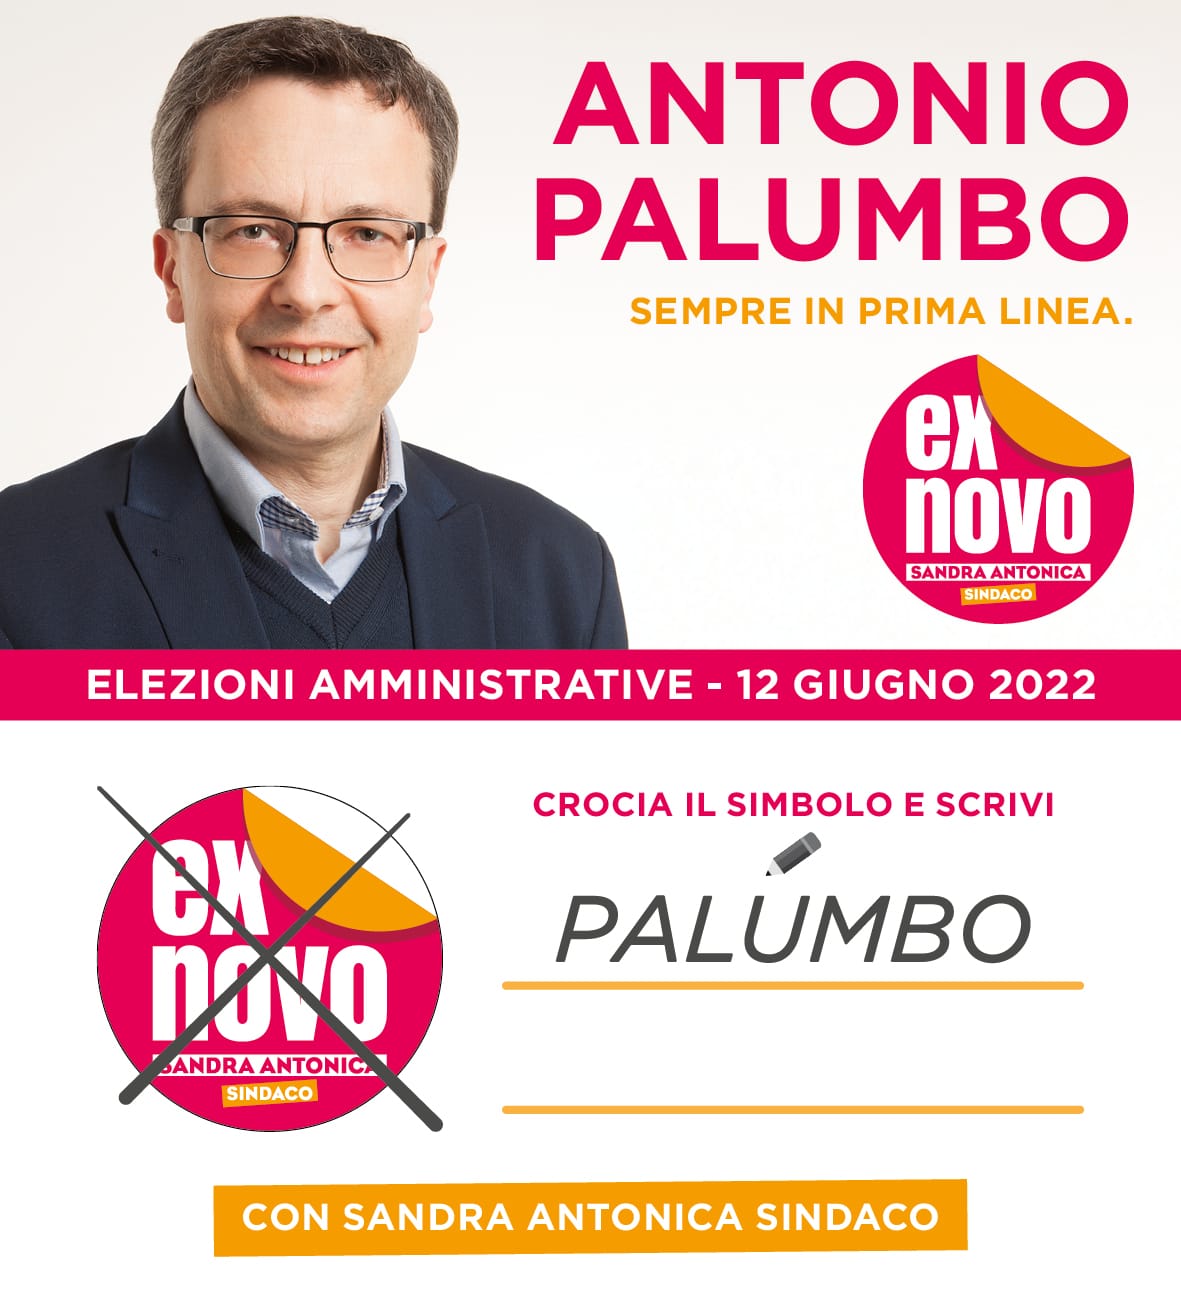 Antonio Palumbo